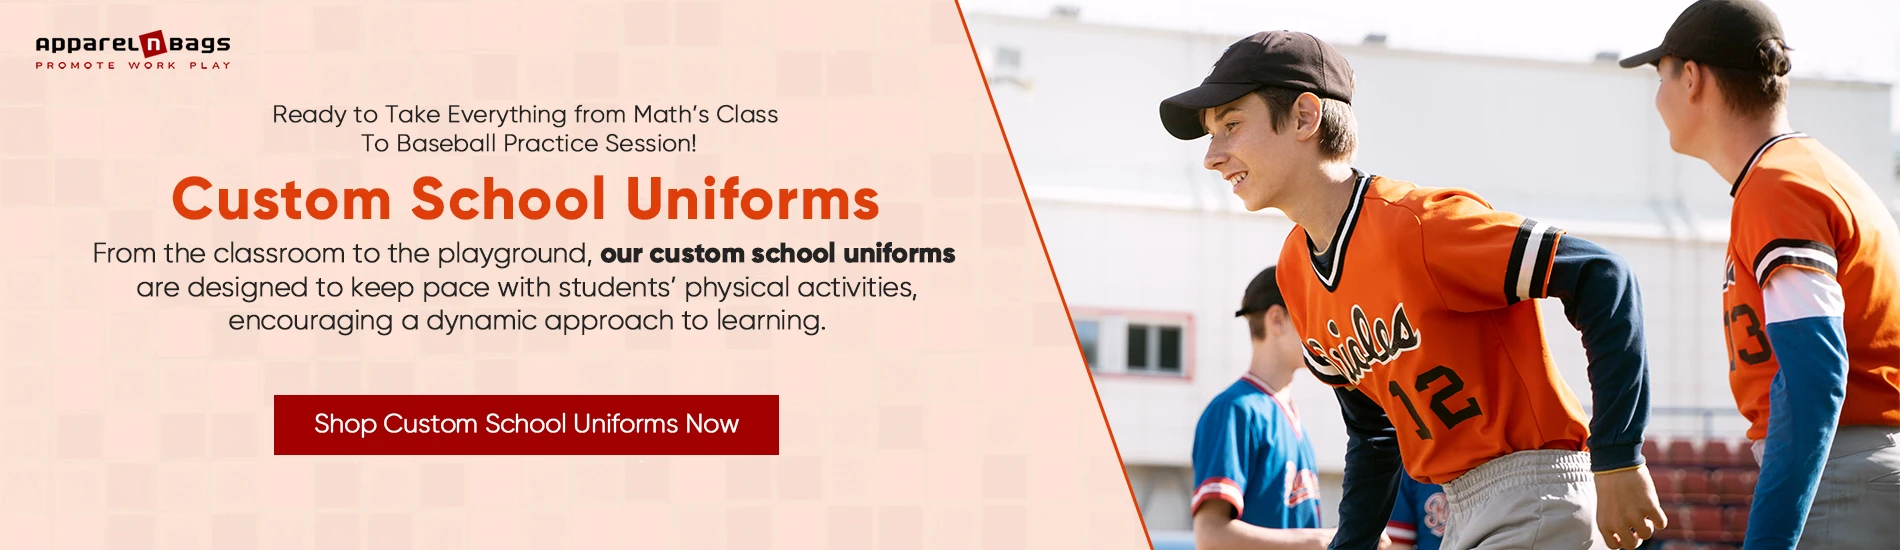 shop custom school uniforms